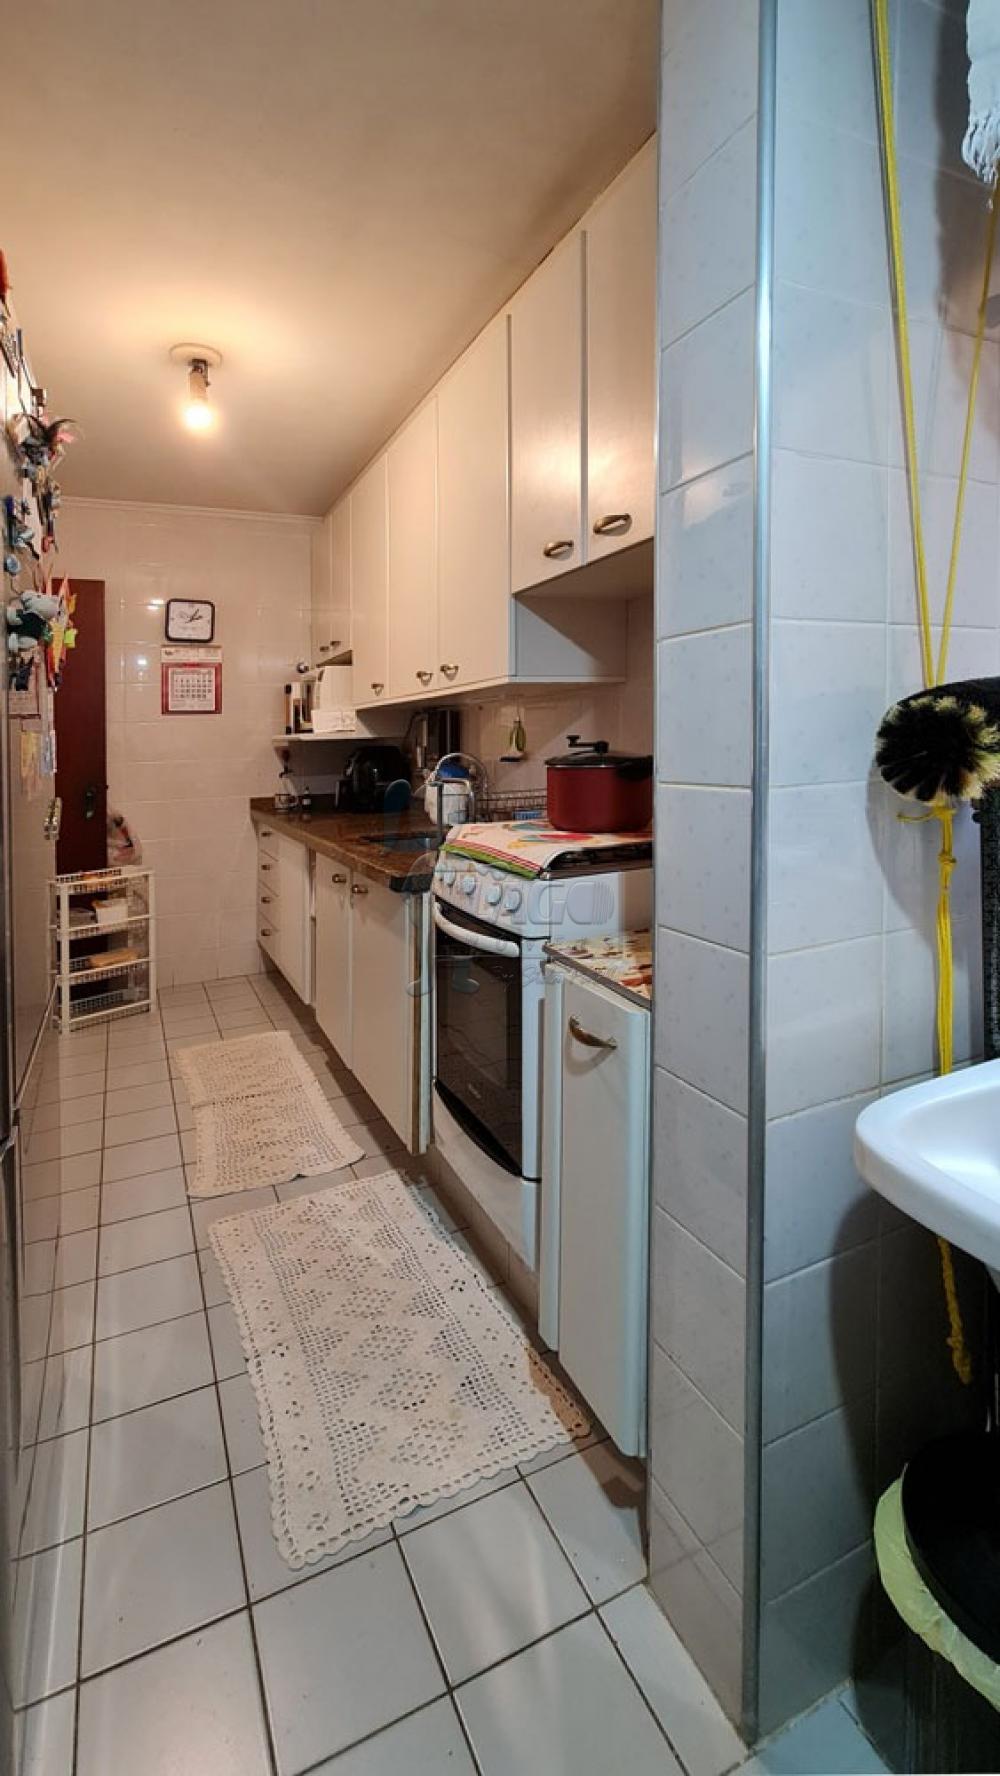 Comprar Apartamento / Padrão em Ribeirão Preto R$ 310.000,00 - Foto 18